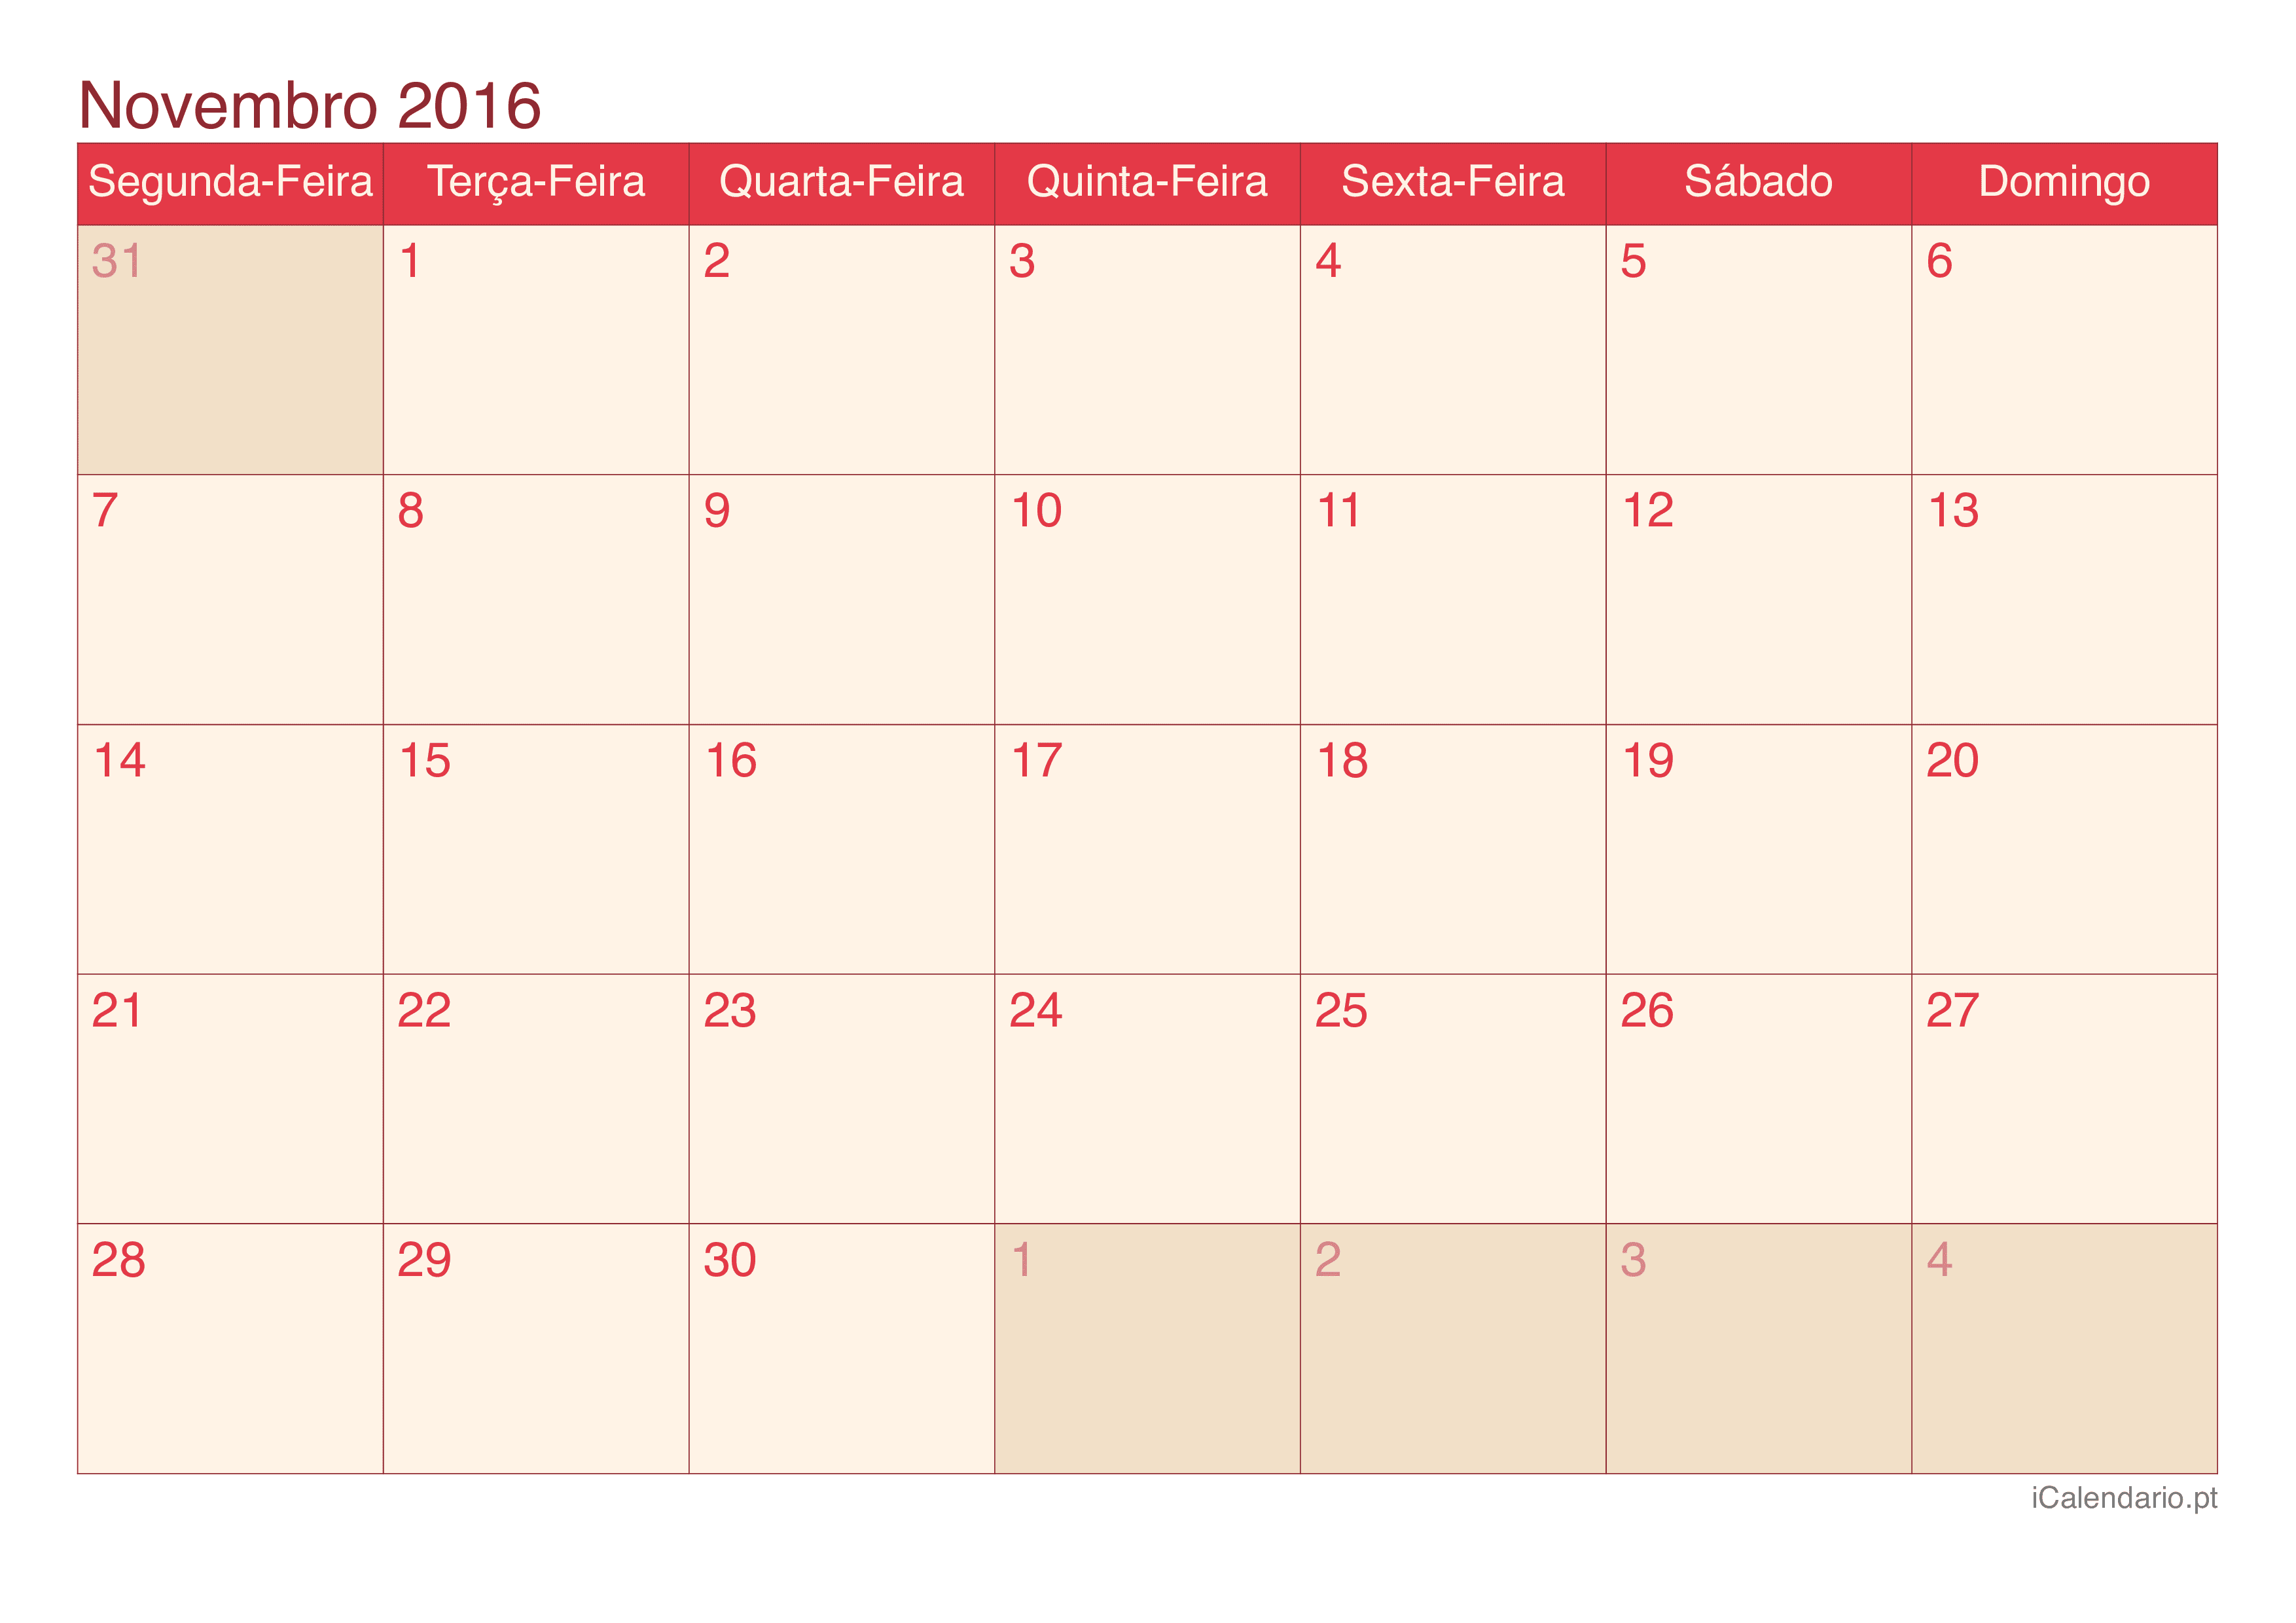 Calendário de novembro 2016 - Cherry